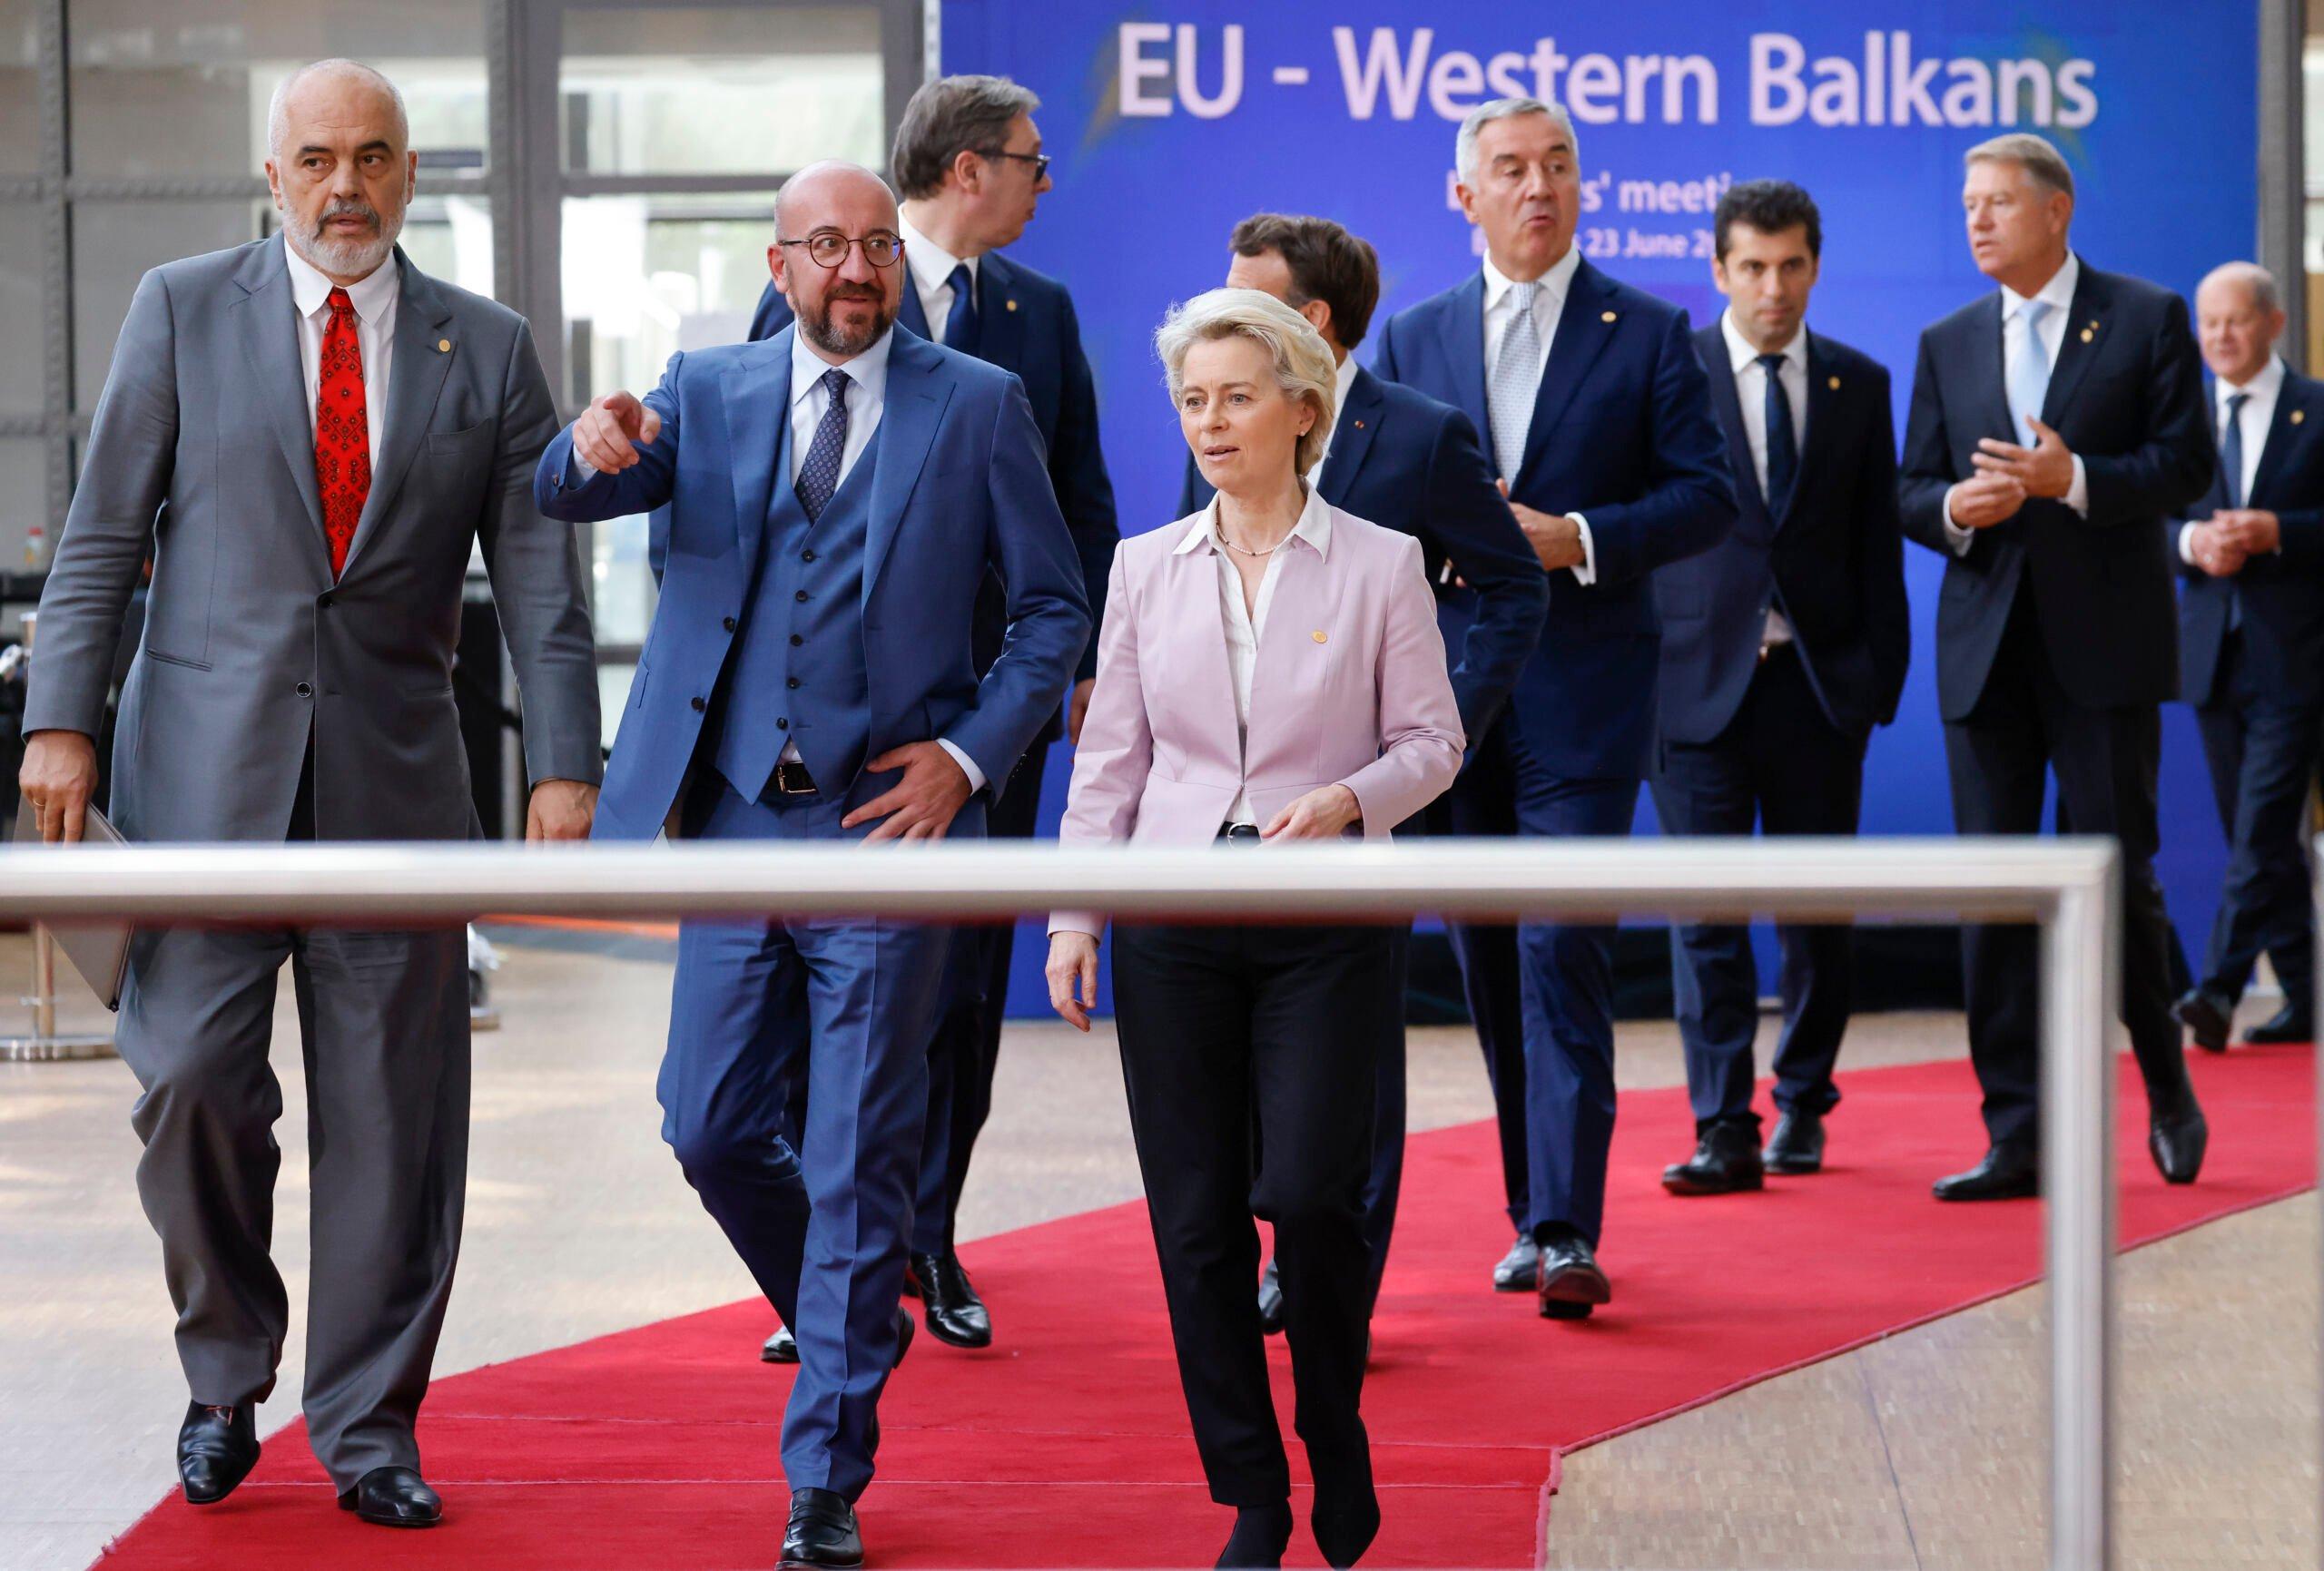 Premier Albanii Edi Rama, przewodniczący Rady Europejskiej Charles Michel i przewodnicząca Komisji Europejskiej Ursula von der Leyen przybywają na rodzinne zdjęcie podczas spotkania przywódców UE i Bałkanów Zachodnich w Brukseli 23 czerwca 2022 r.